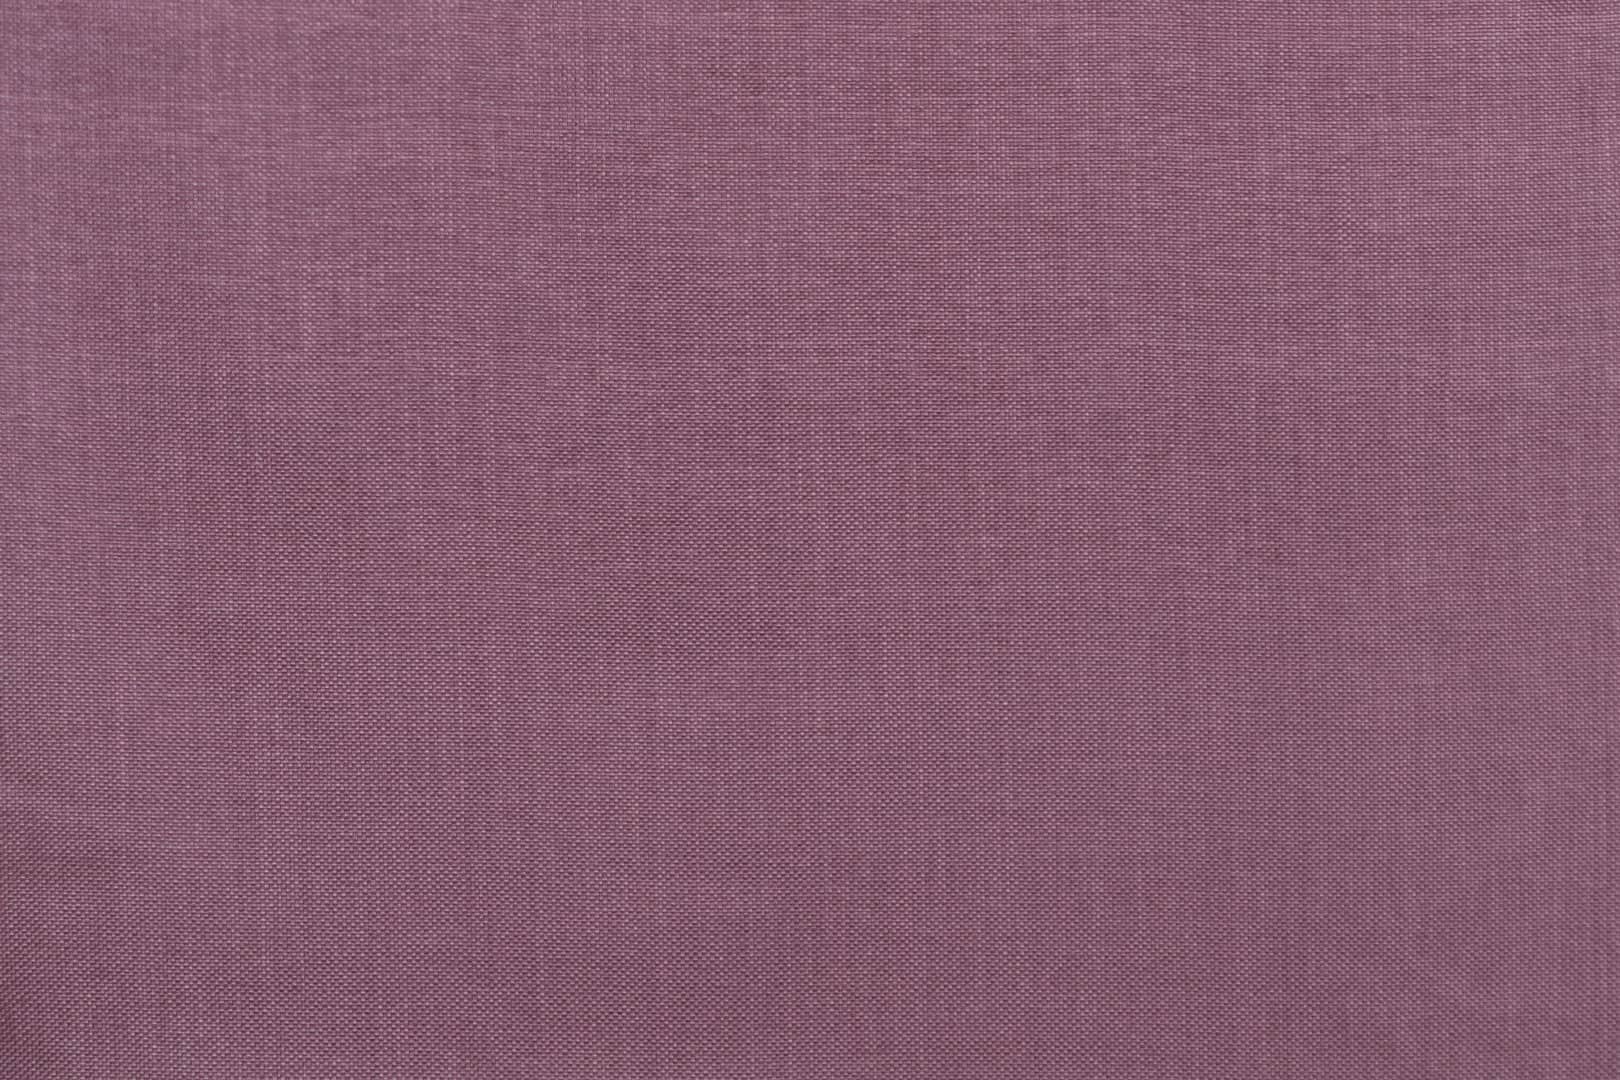 J1605 ARLECCHINO 019 Granata home decoration fabric